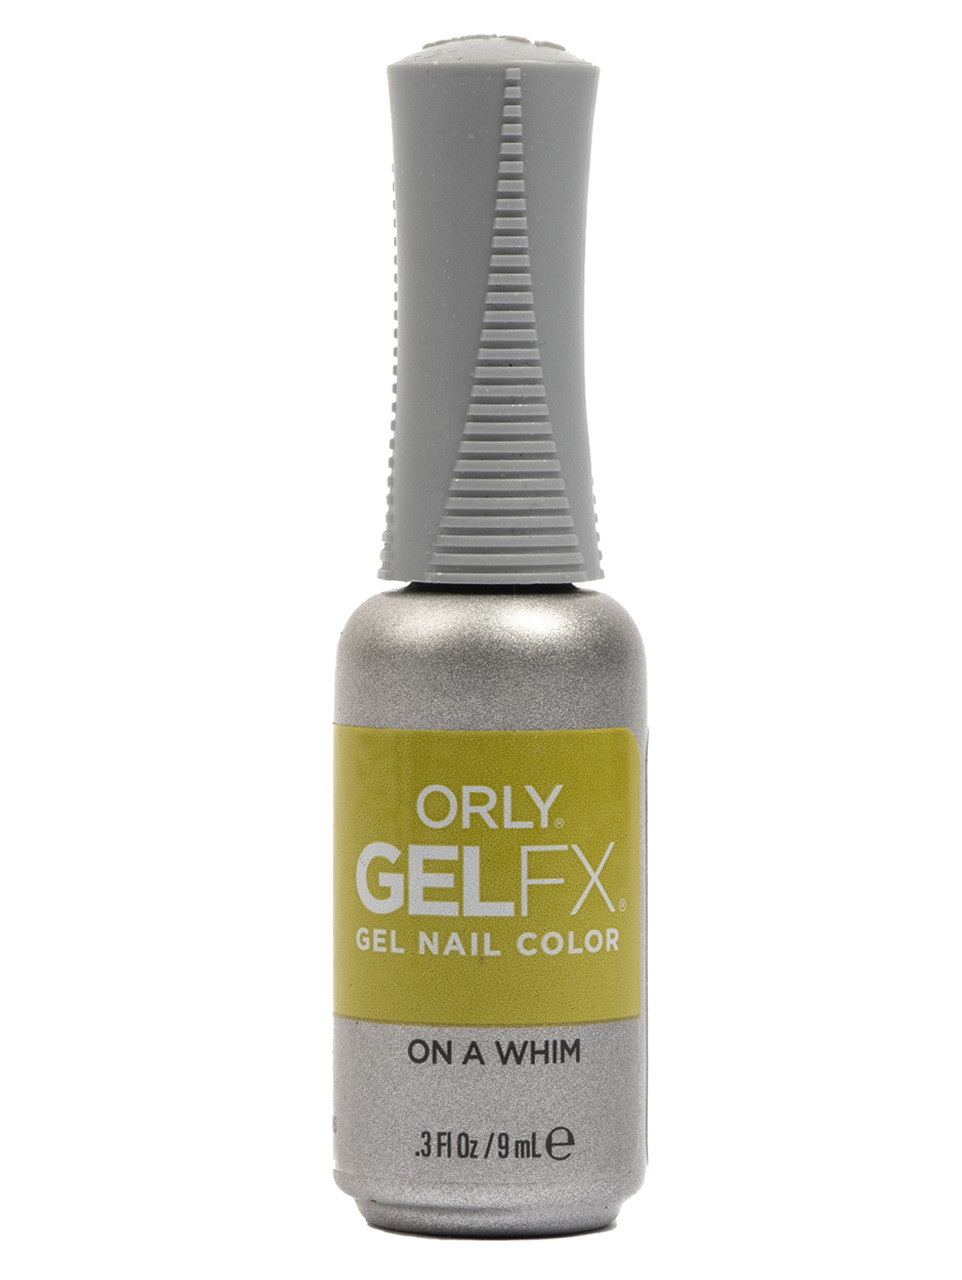 Orly Gel FX Soak-Off Gel On A Whim - .3 fl oz / 9 ml